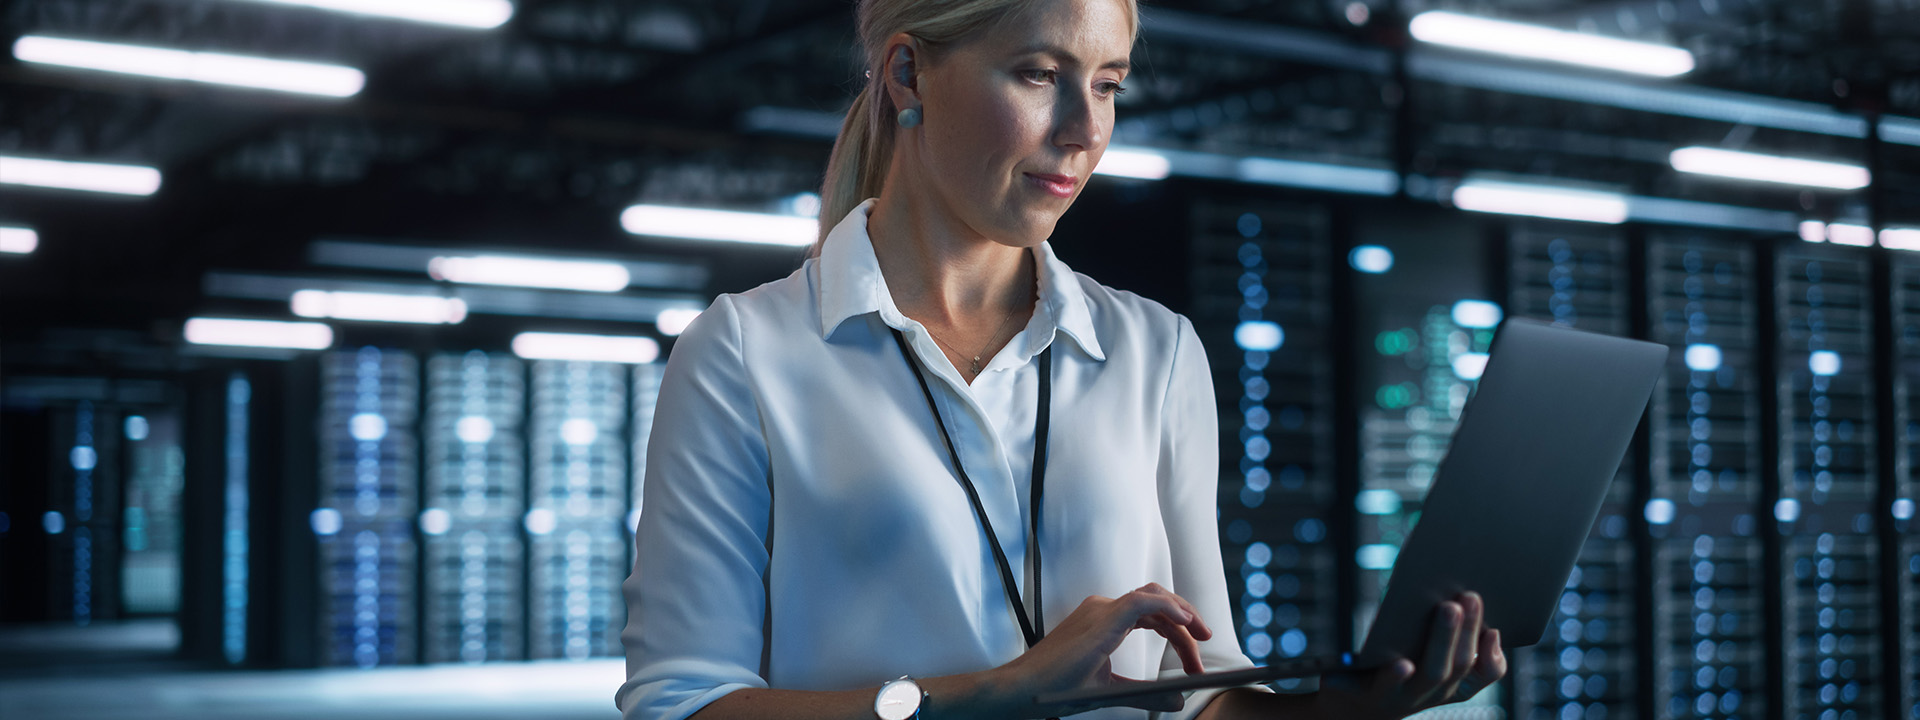 Eine Frau in weißem Hemd hält einen Laptop in einem Serverraum.